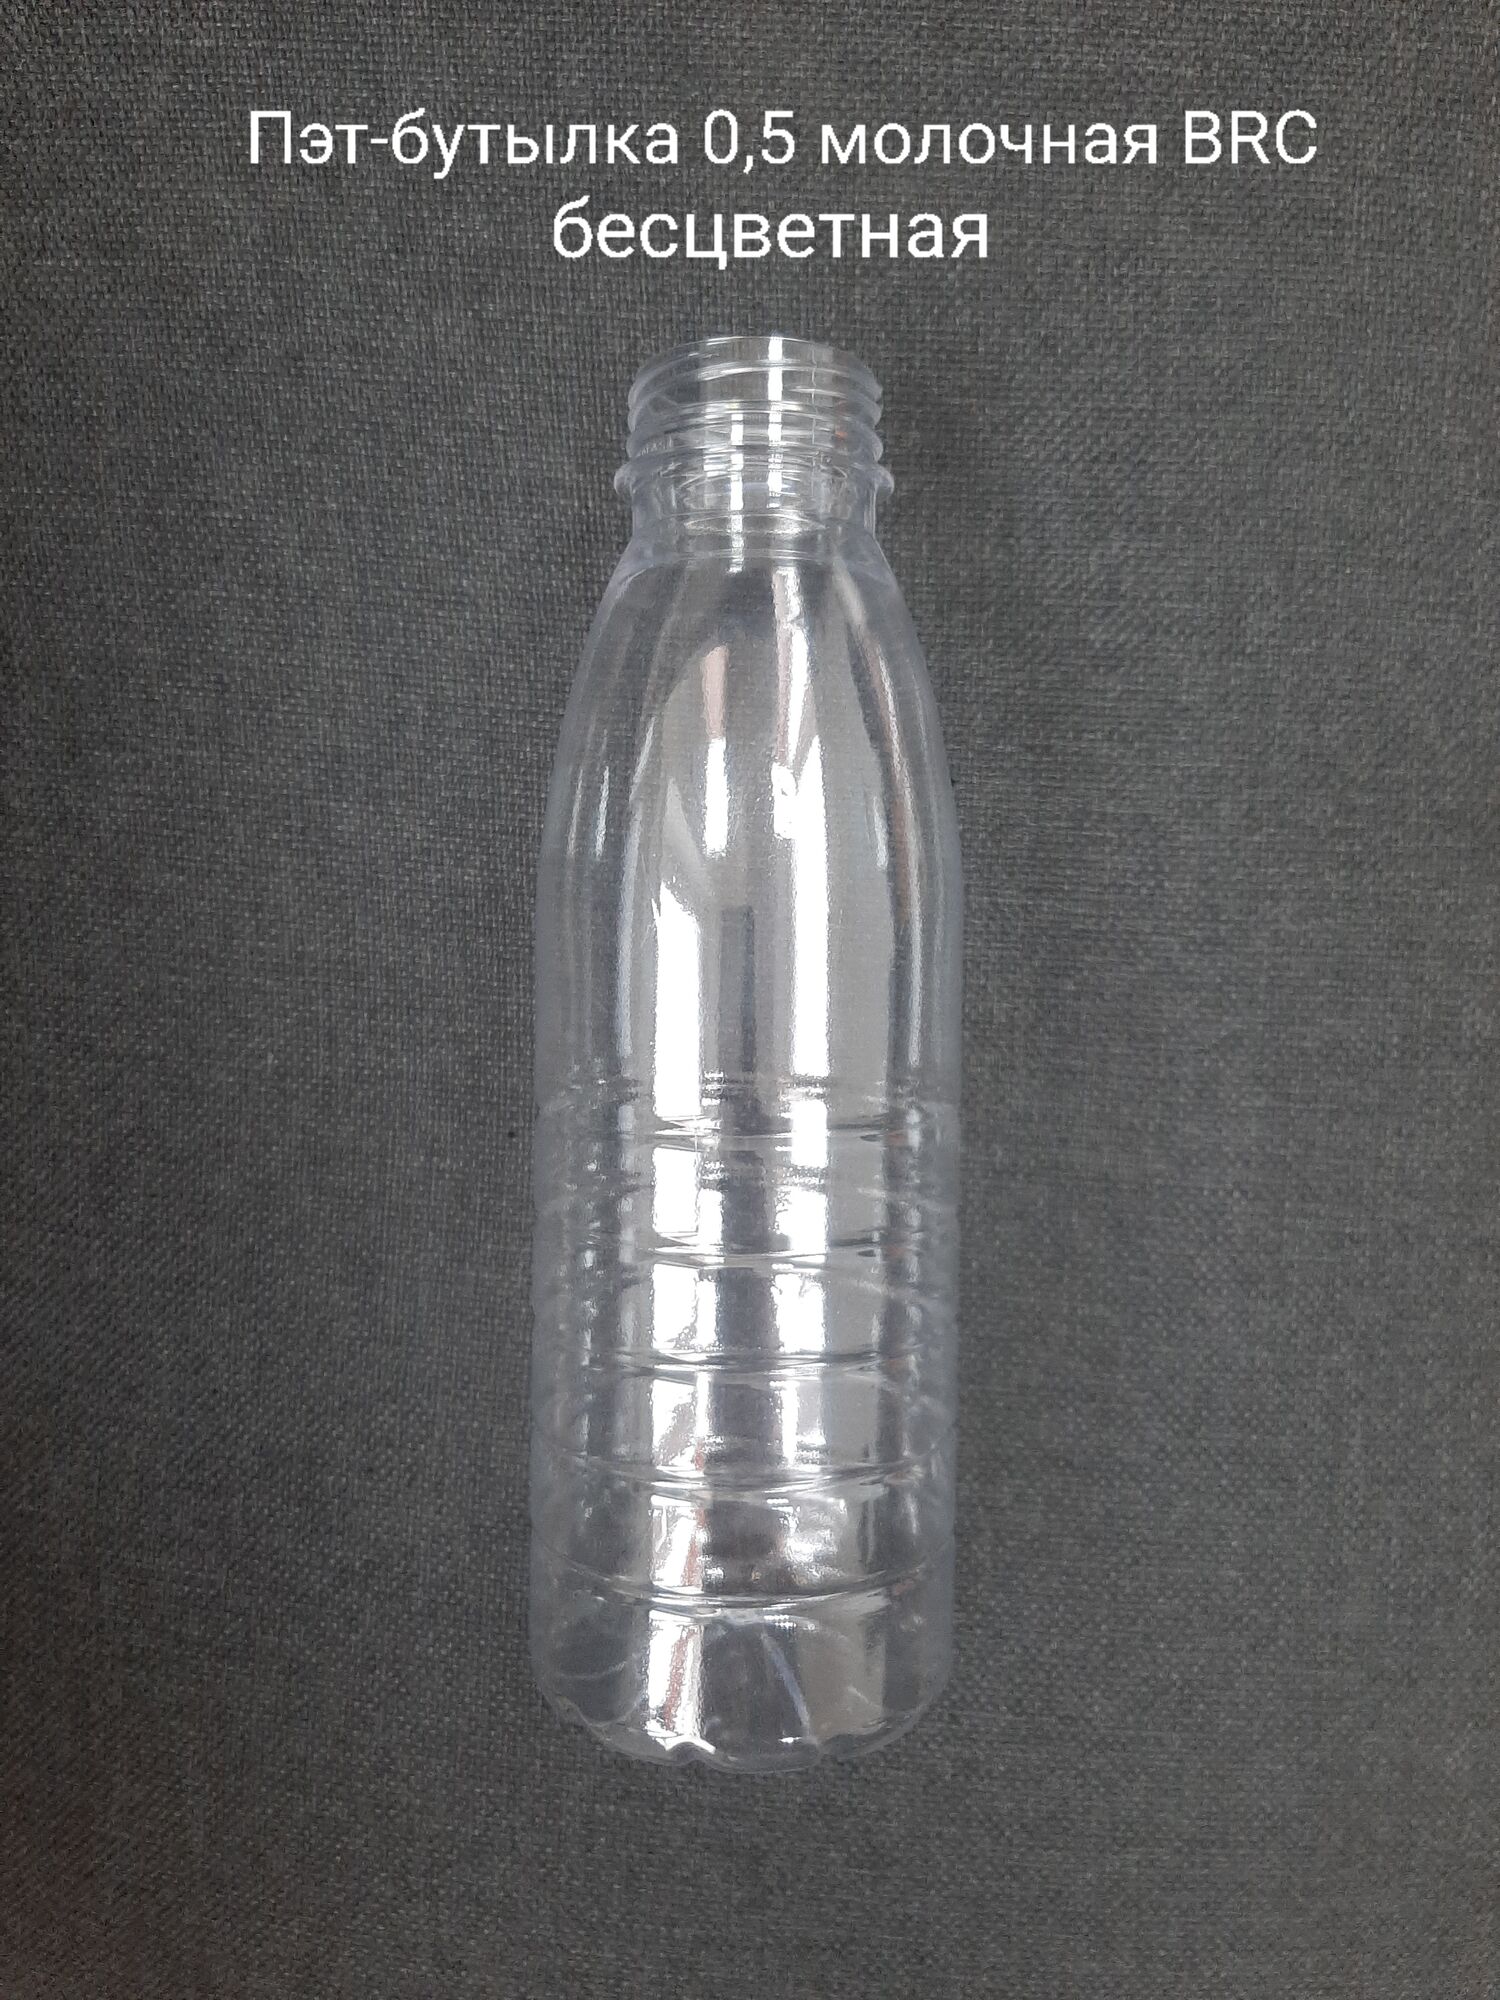 Пэт-бутылка 0,5 молочная BRC, бесцветная (200 шт в упаковке) вес 25,5 гр.